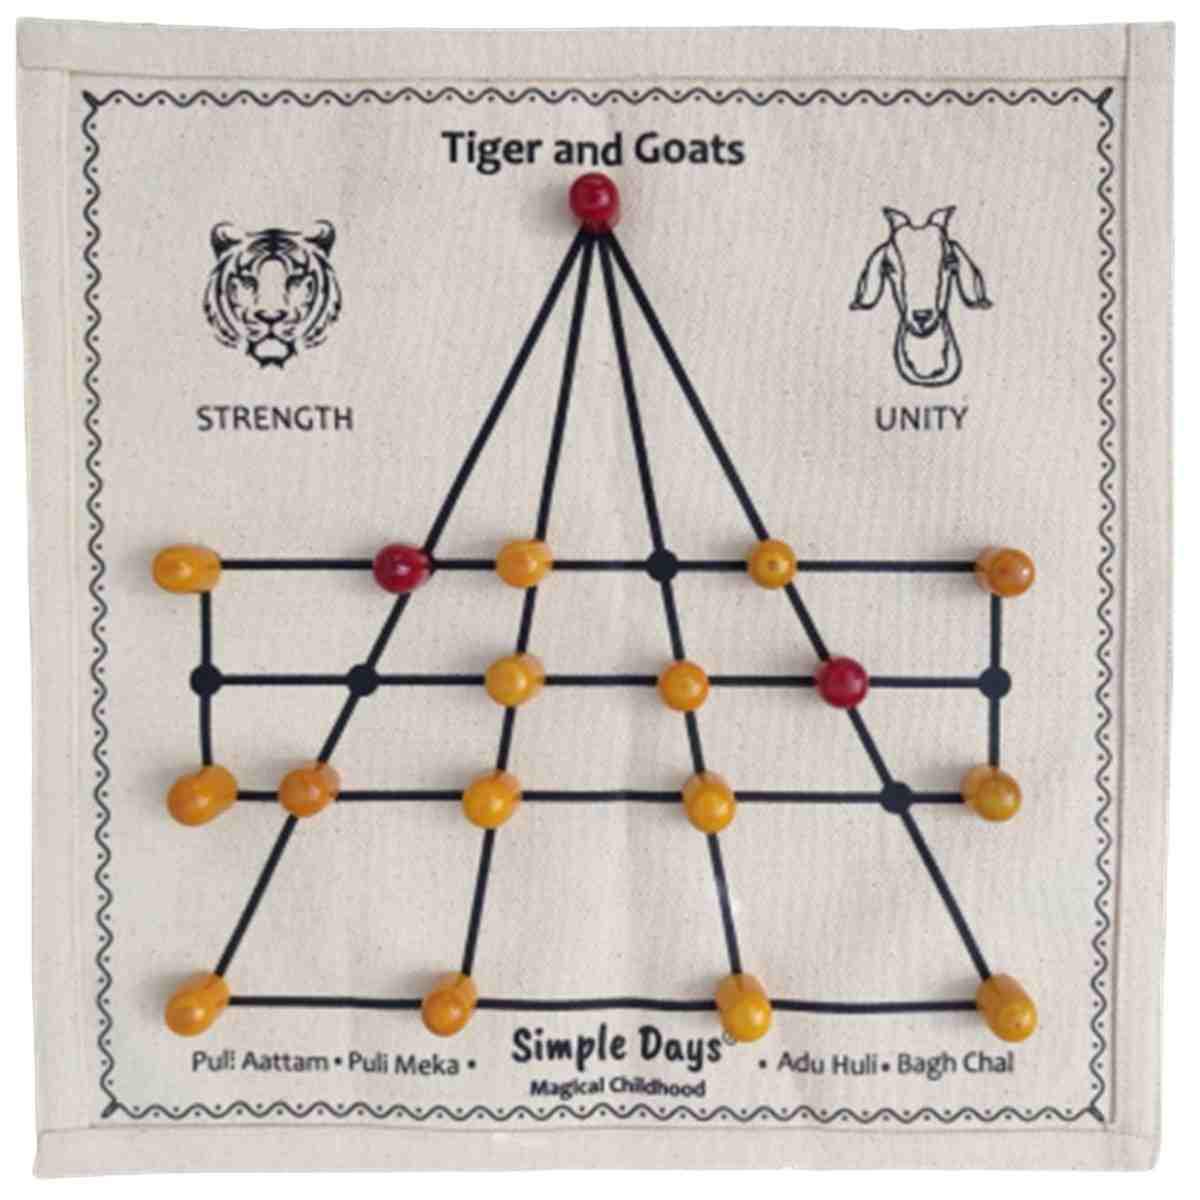 Tigers and Goats / Puli Meka / Aadu Puli Aattam Board Game – Qtrove